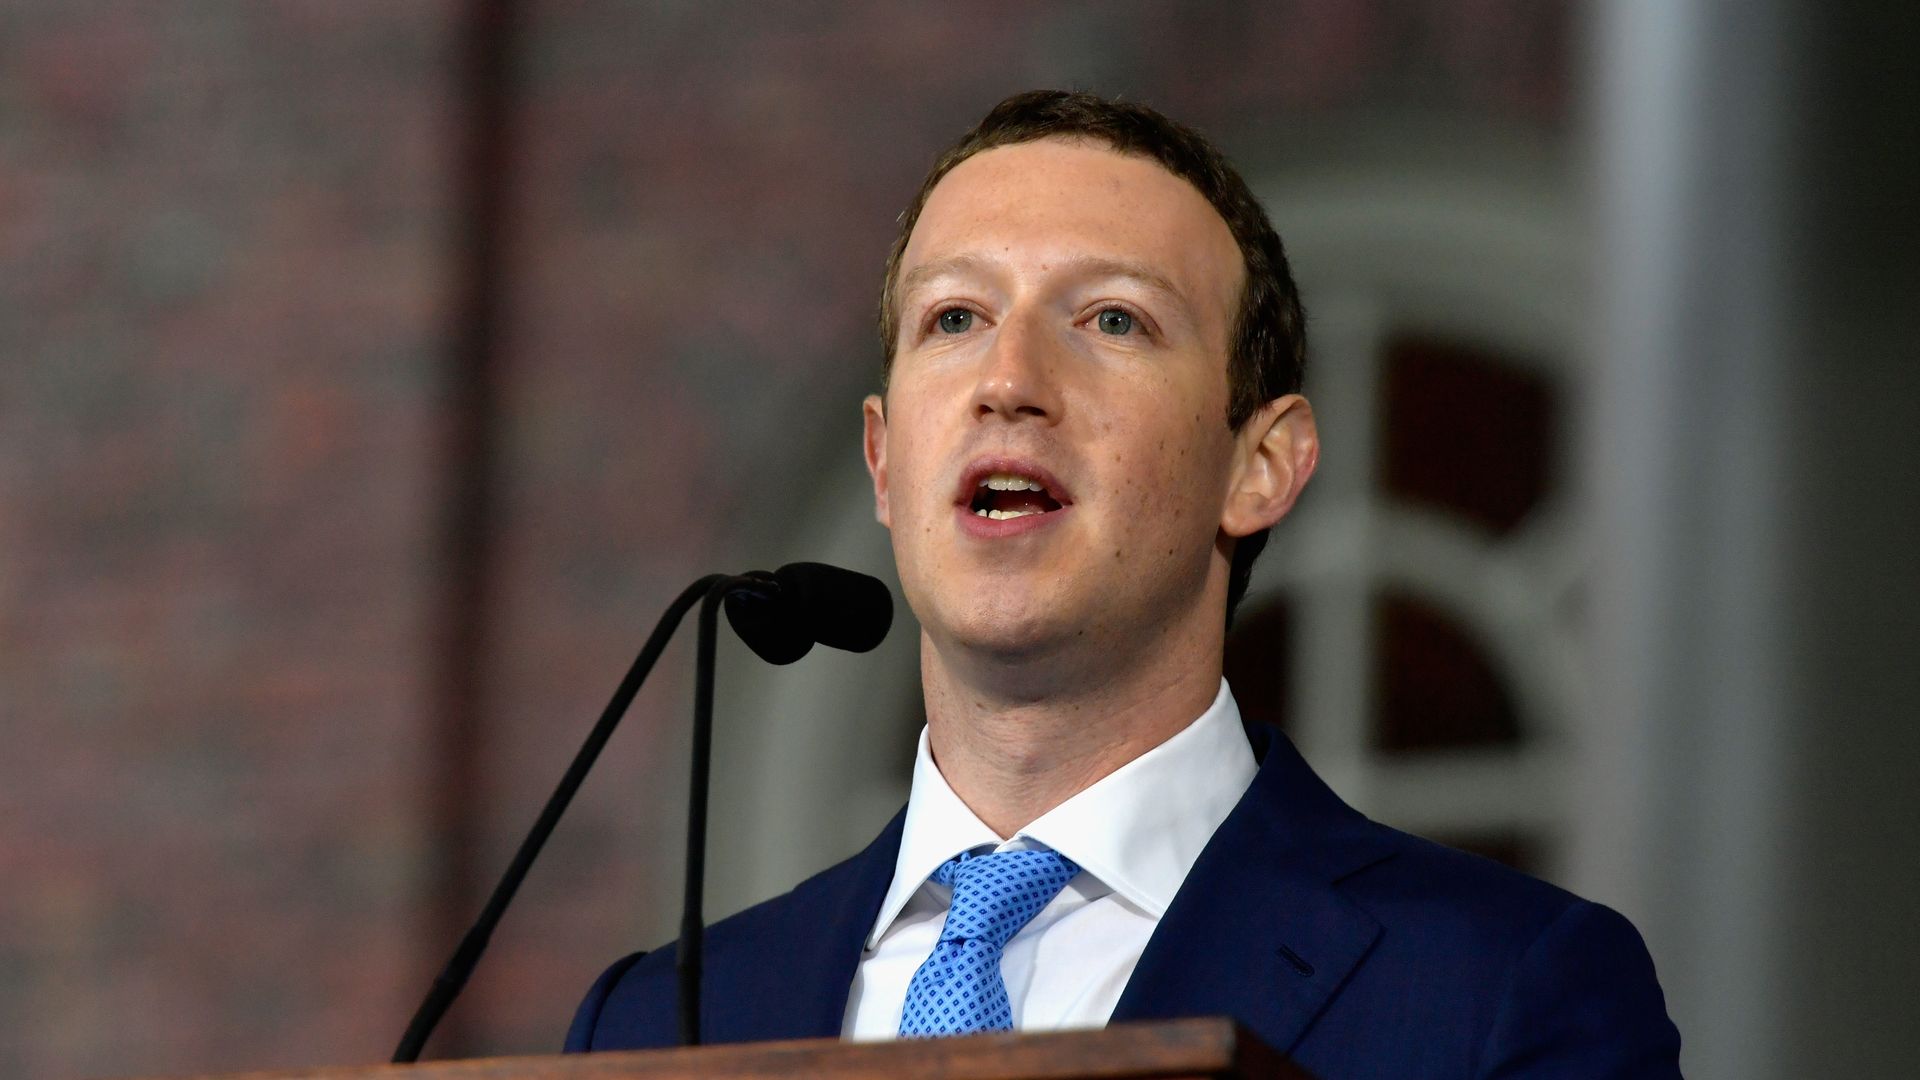 Facebook CEO Mark Zuckerberg speaks from behind a podium